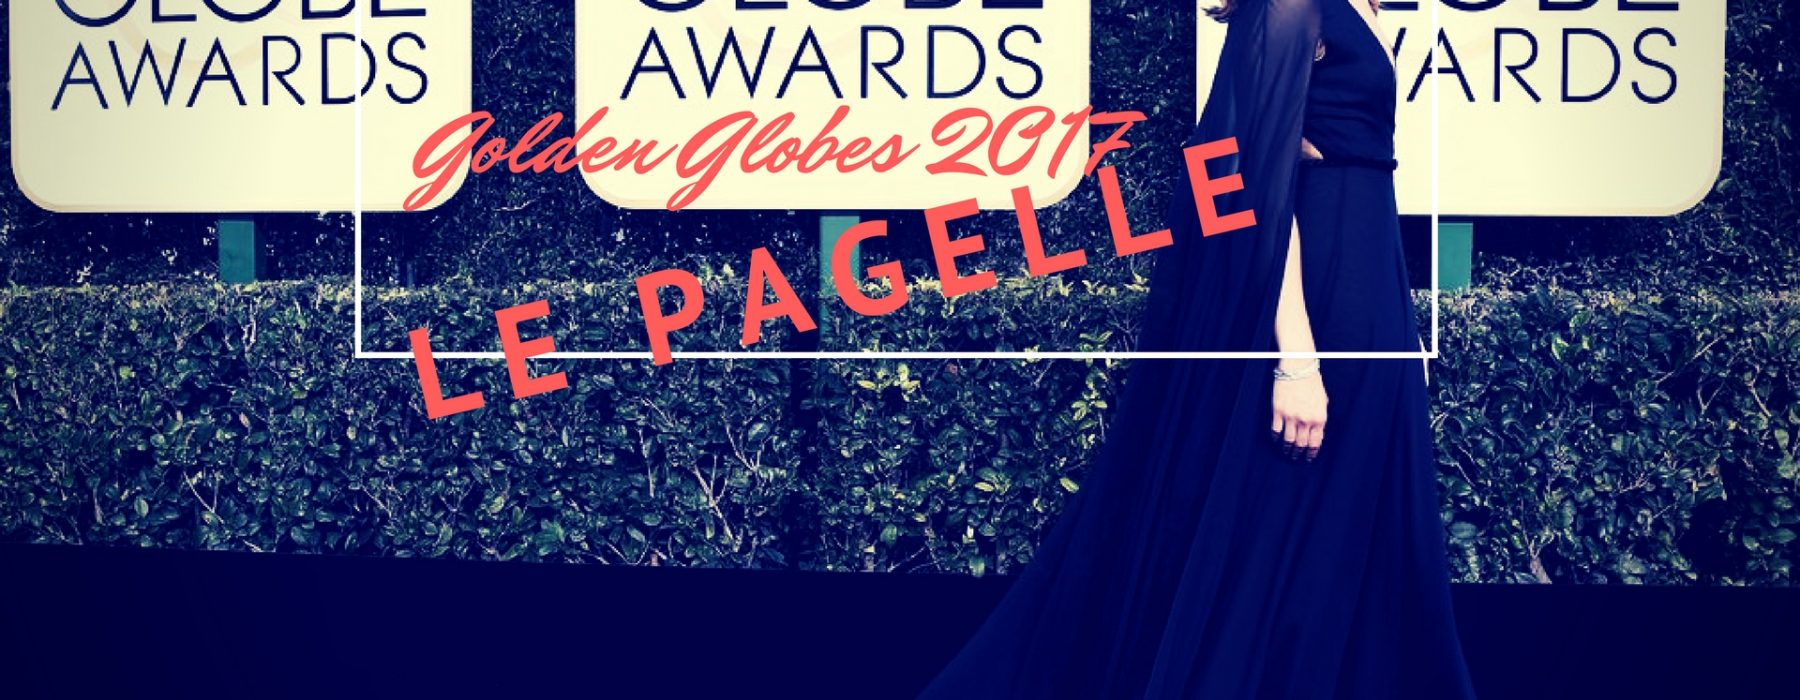 Le inesorabili pagelle delle moda: Golden Globes, il primo red carpet dell’anno.